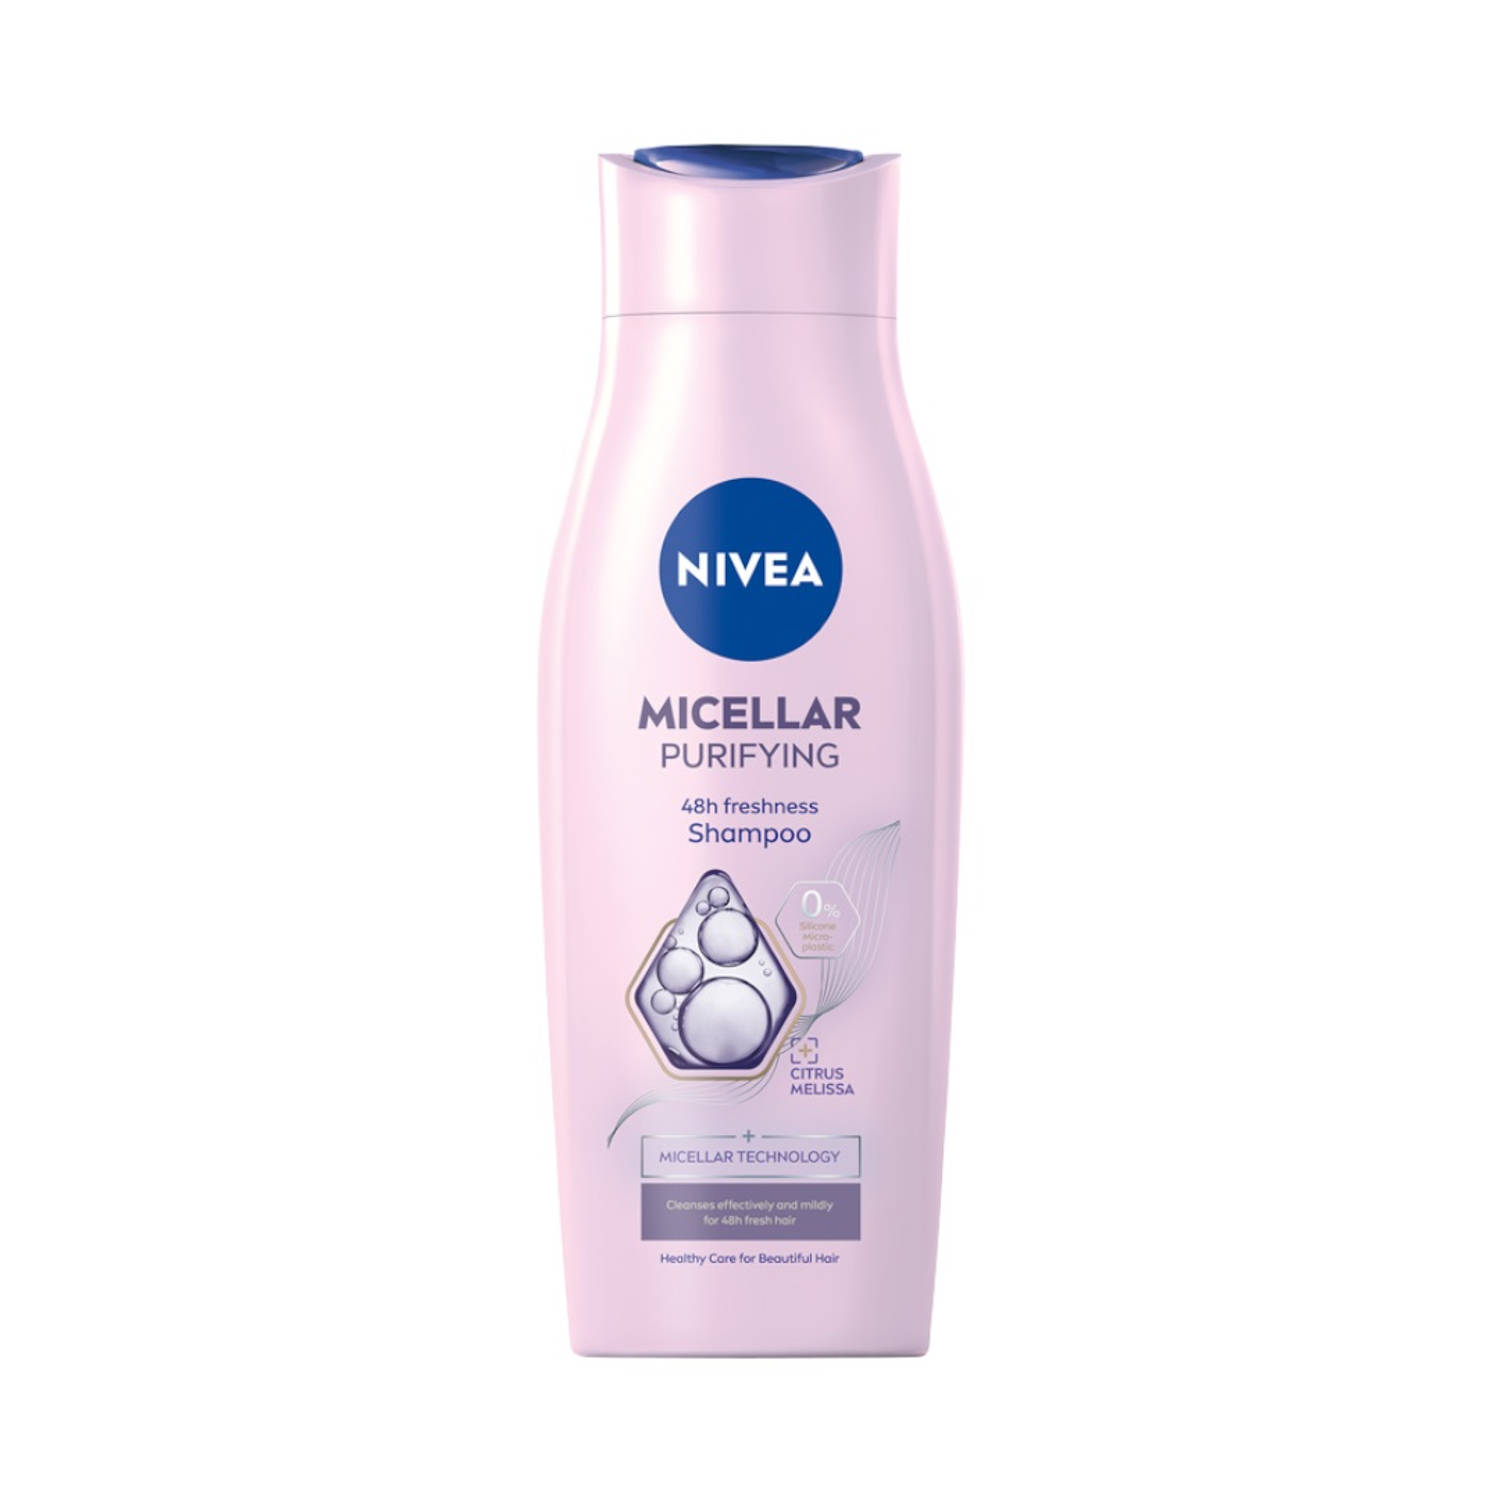 Micellaire Zuiverende shampoo met micellaire technologie verfrist het haar 400ml